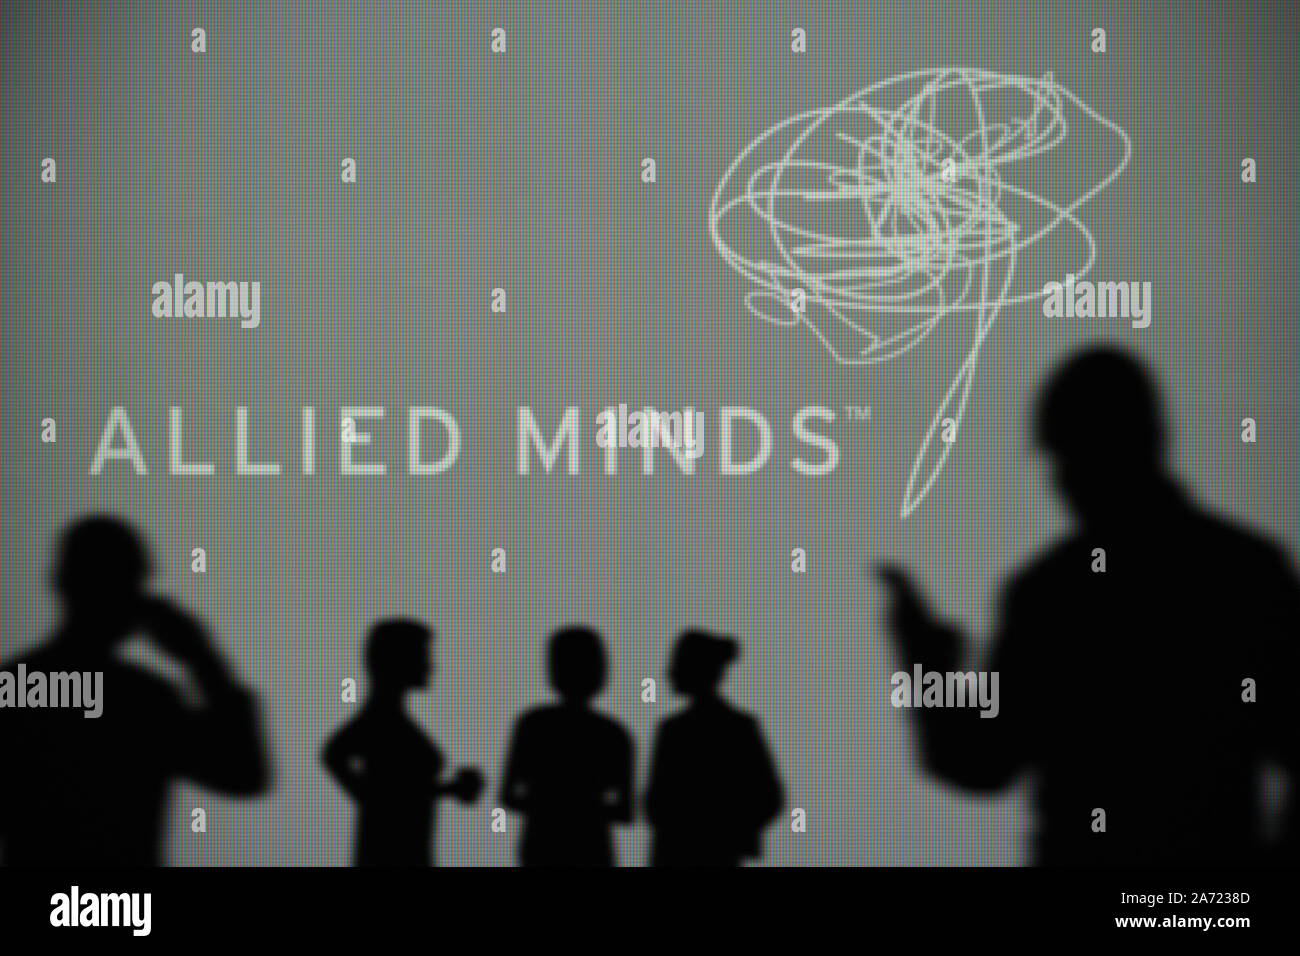 La Allied menti logo è visibile su uno schermo a LED in background mentre si profila una persona utilizza uno smartphone (solo uso editoriale) Foto Stock